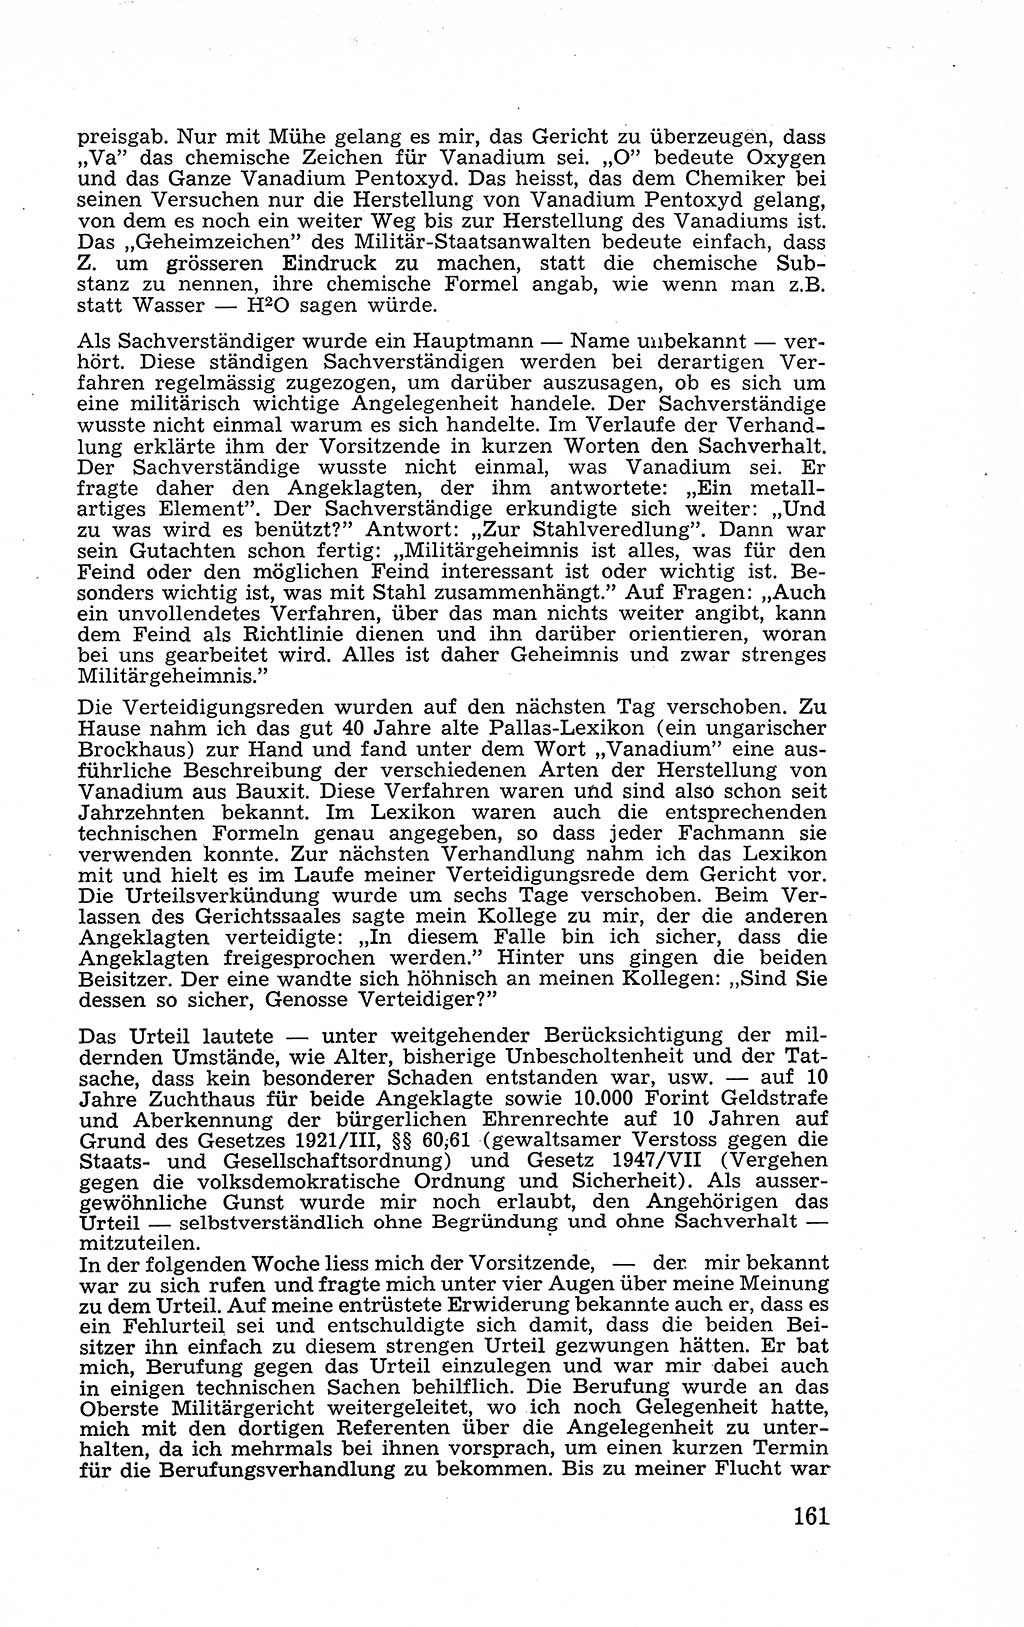 Recht in Fesseln, Dokumente, Internationale Juristen-Kommission [Bundesrepublik Deutschland (BRD)] 1955, Seite 161 (R. Dok. IJK BRD 1955, S. 161)